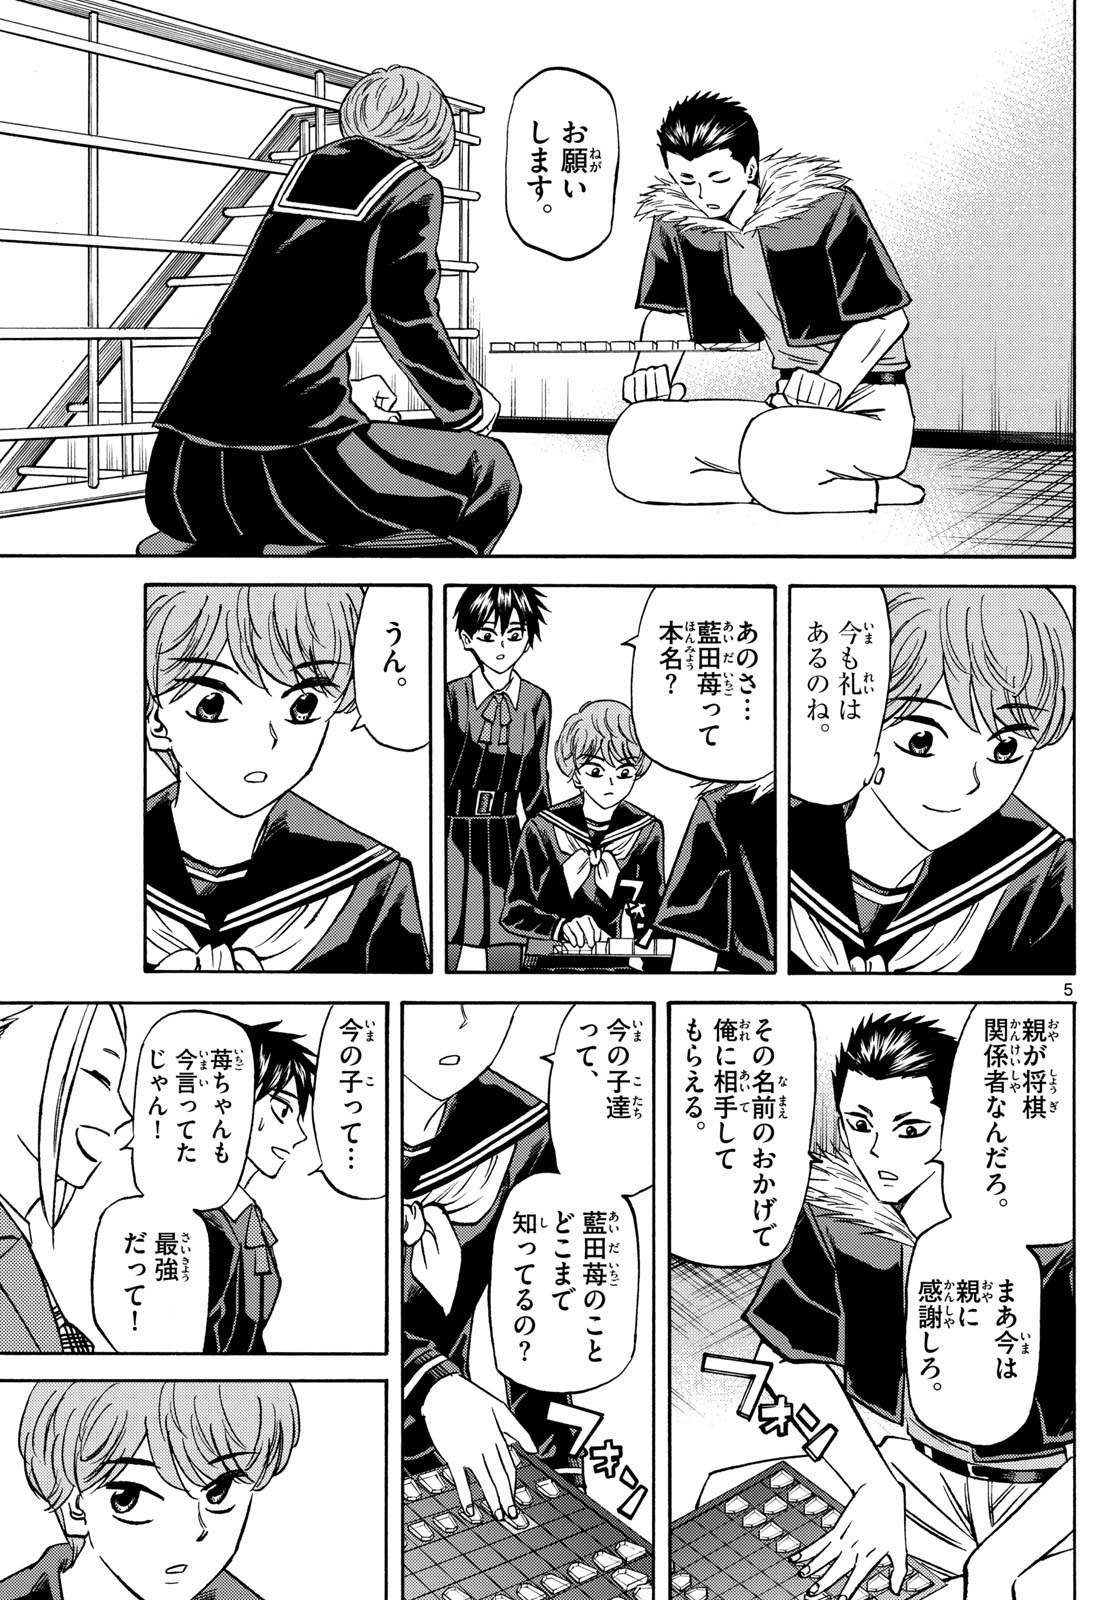 Tatsu to Ichigo - Chapter 183 - Page 5